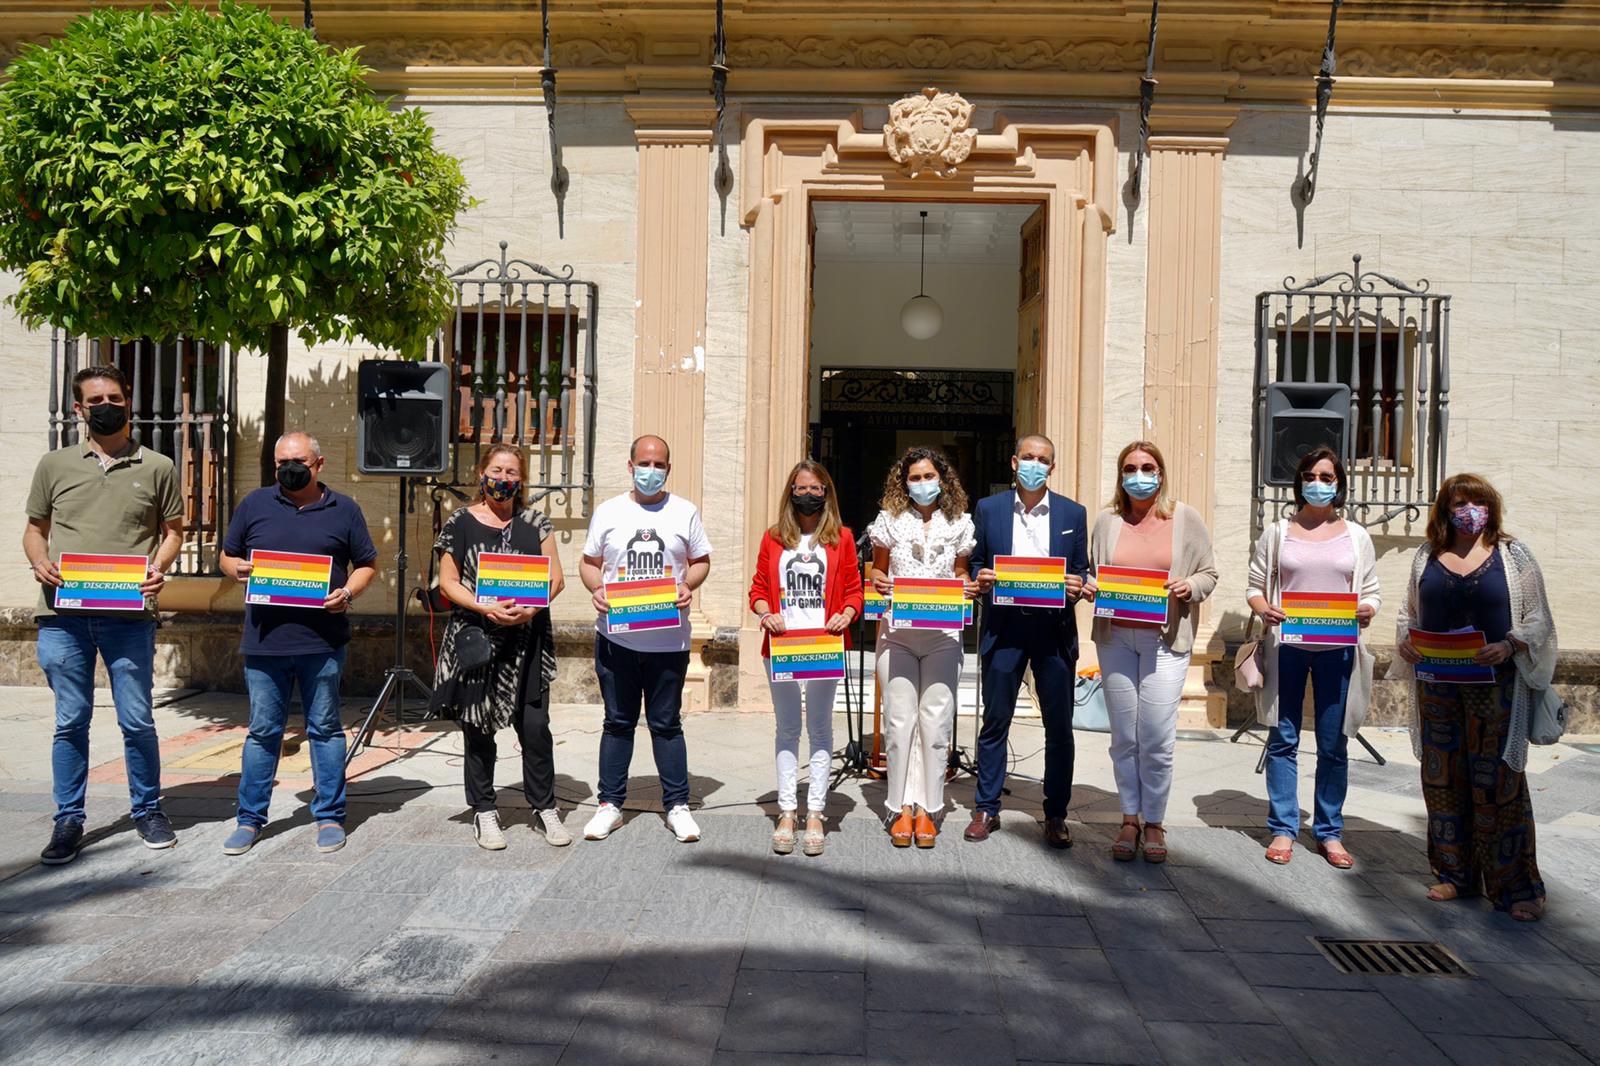 La alcaldesa de Ayamonte dio lectura al Manifiesto en apoyo al colectivo LGTBI